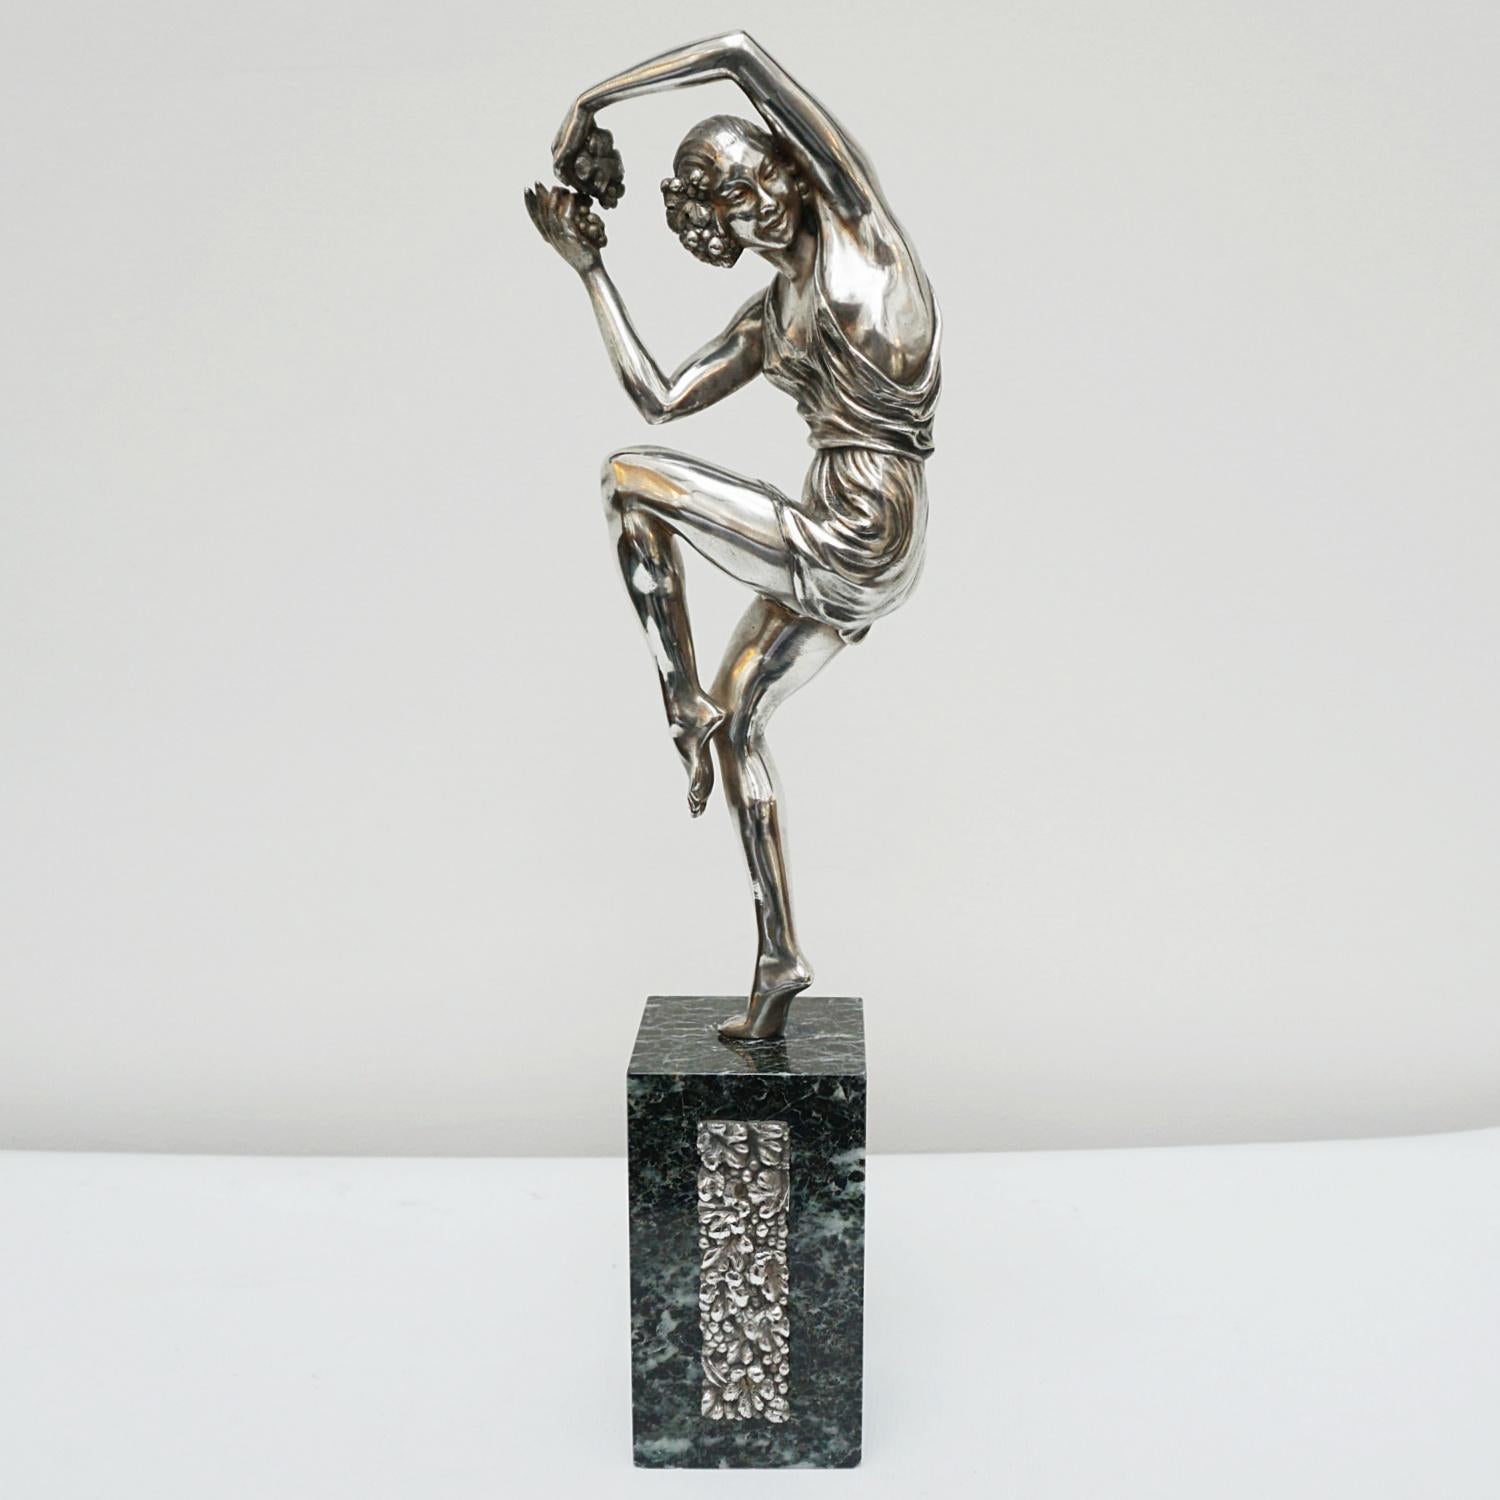 Sculpture en bronze Art déco de Pierre Le Faguays (1892-1962). Une élégante danseuse dans une pose enjouée tenant une grappe de raisin entre ses mains, portant une robe ample. Bronze argenté, reposant sur une base en marbre avec une décoration en